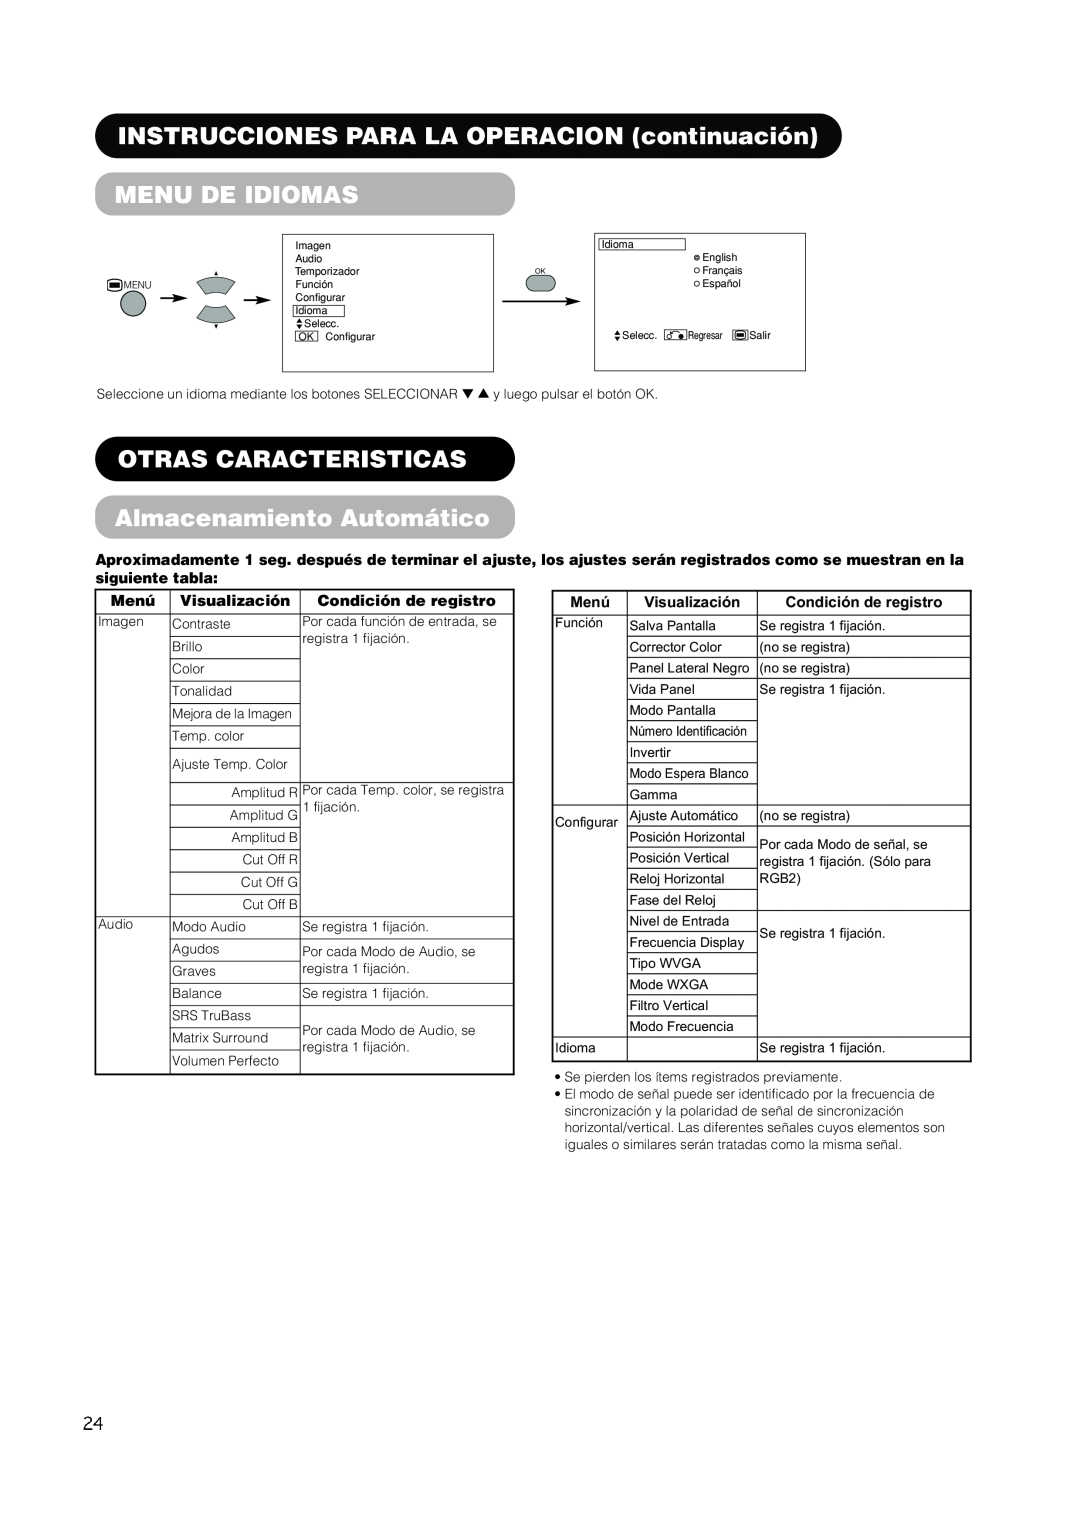 Hitachi PW1A Menu De Idiomas, OTRAS CARACTERISTICAS Almacenamiento Automático, siguiente tabla, Menú, Visualización 